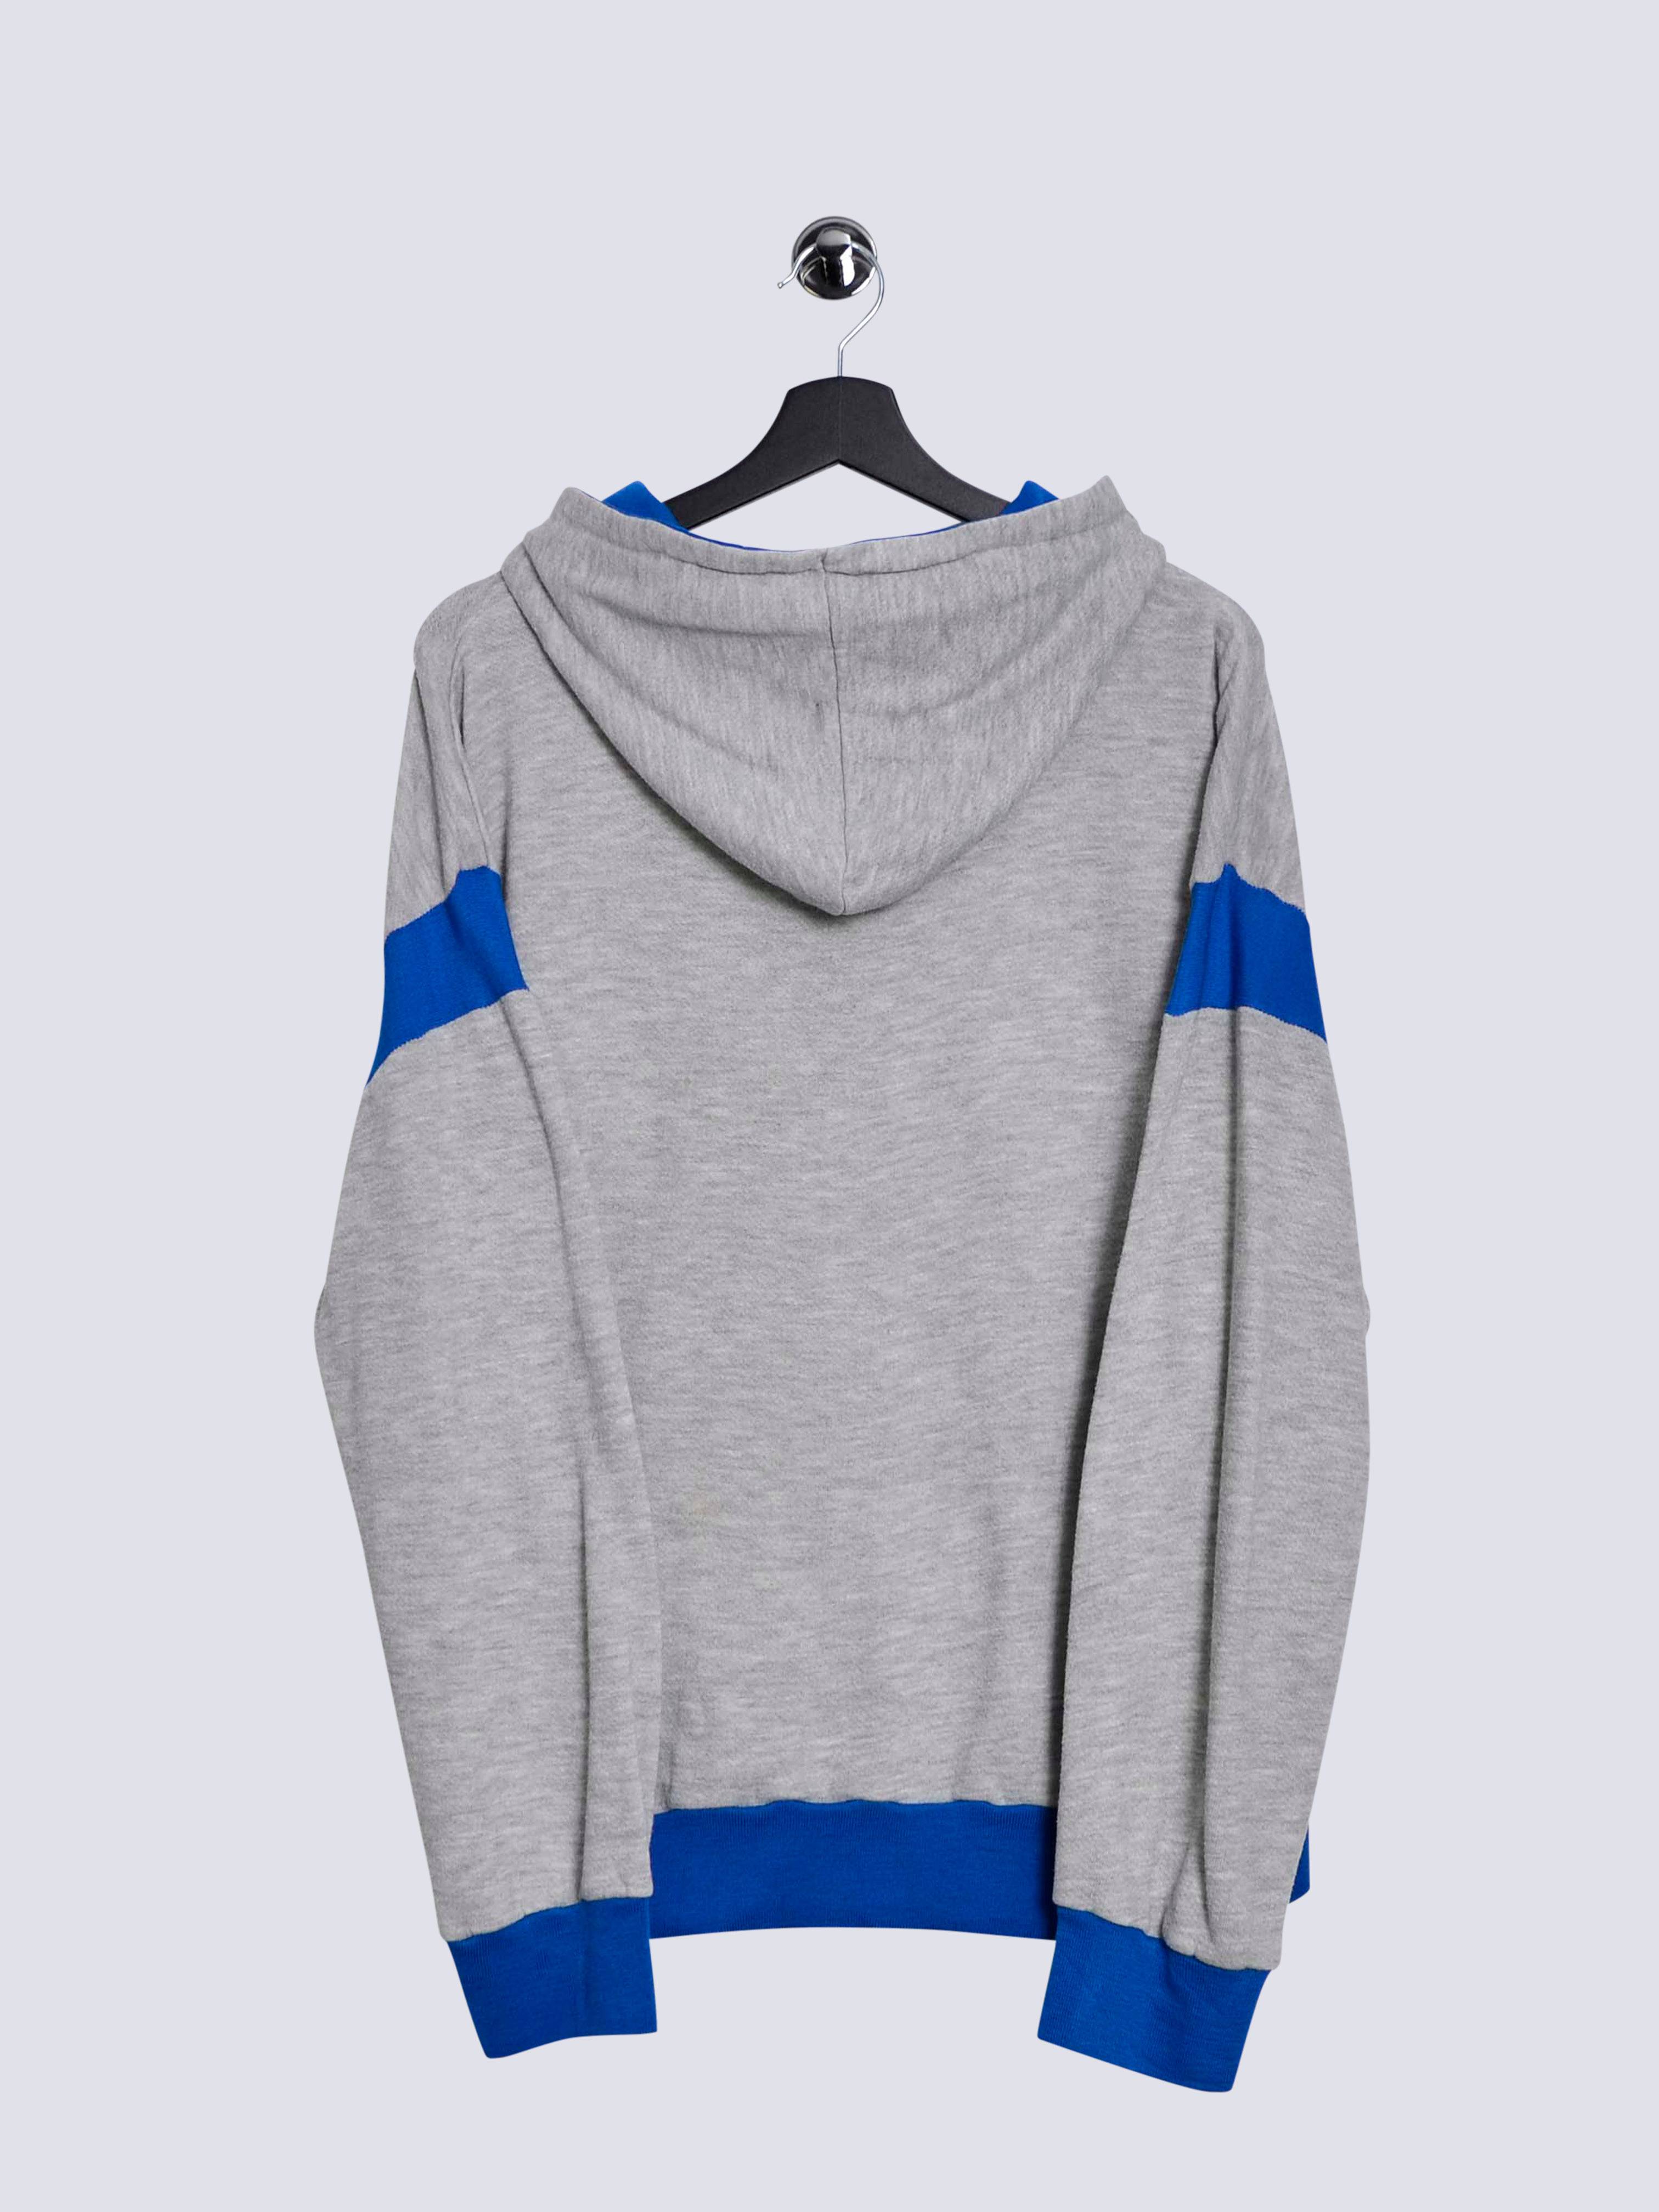 Nike Halfzip Sportswear Hoodie Grey // Medium - RHAGHOUSE VINTAGE